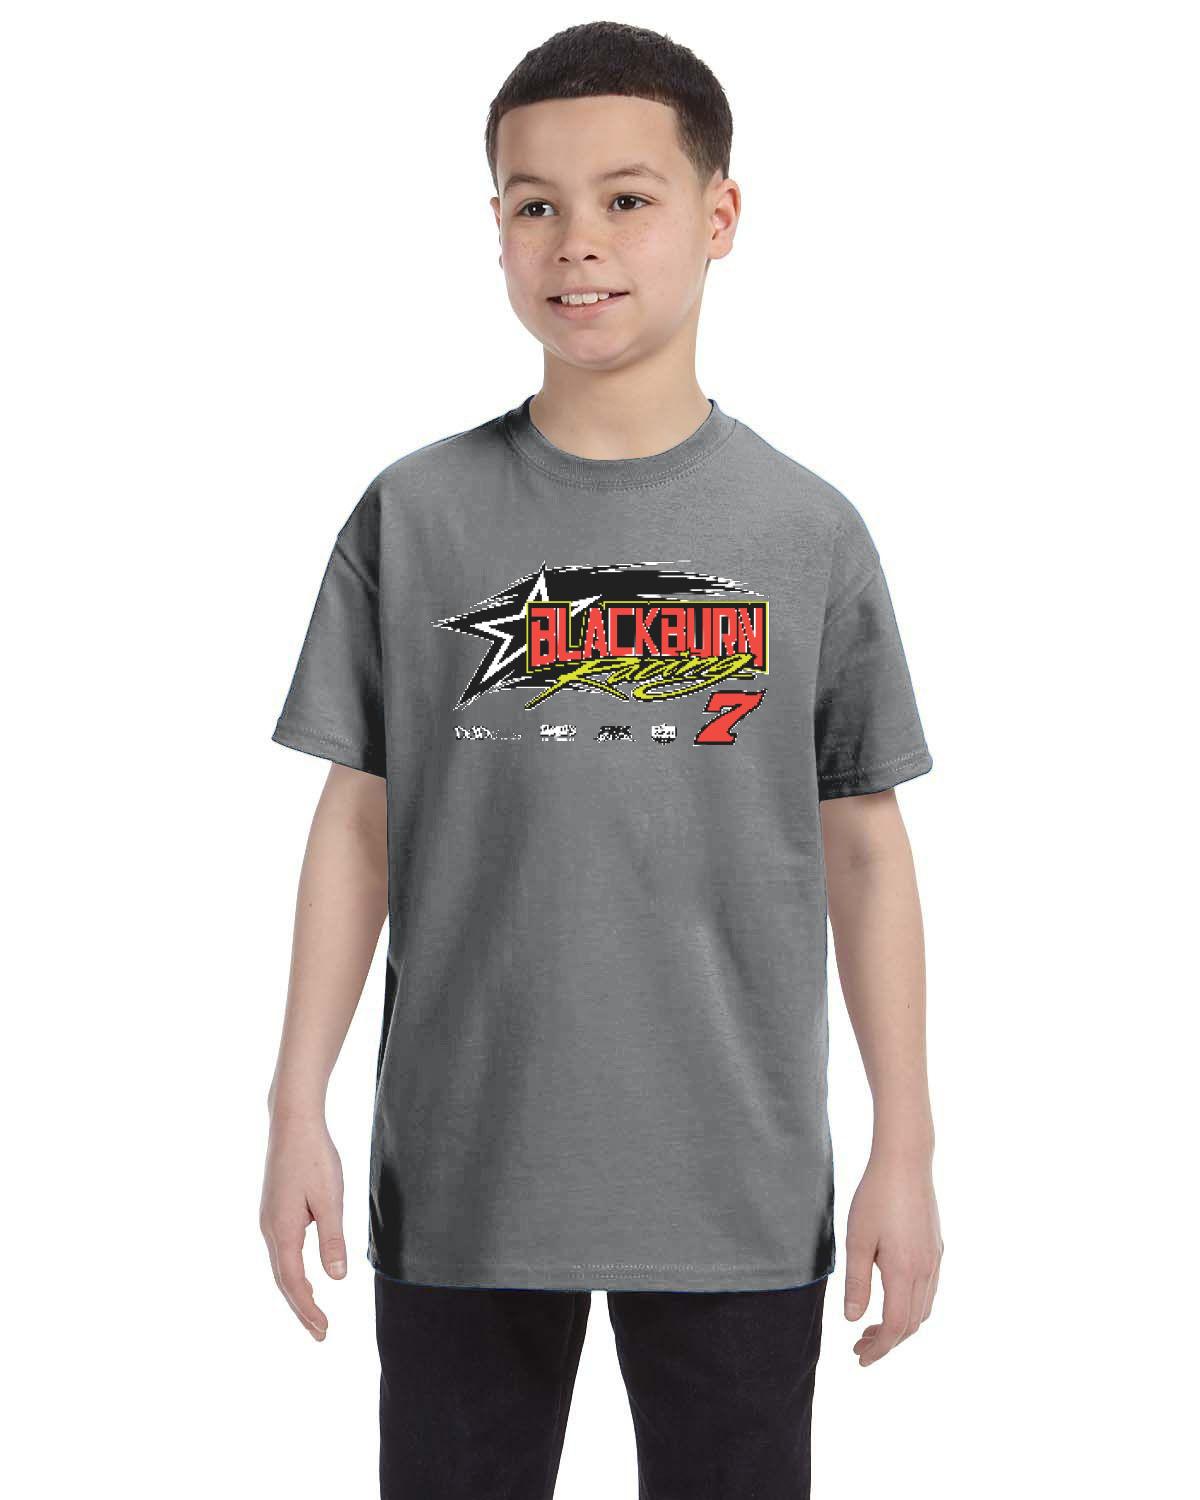 Jeff Blackburn Kid's T-Shirt